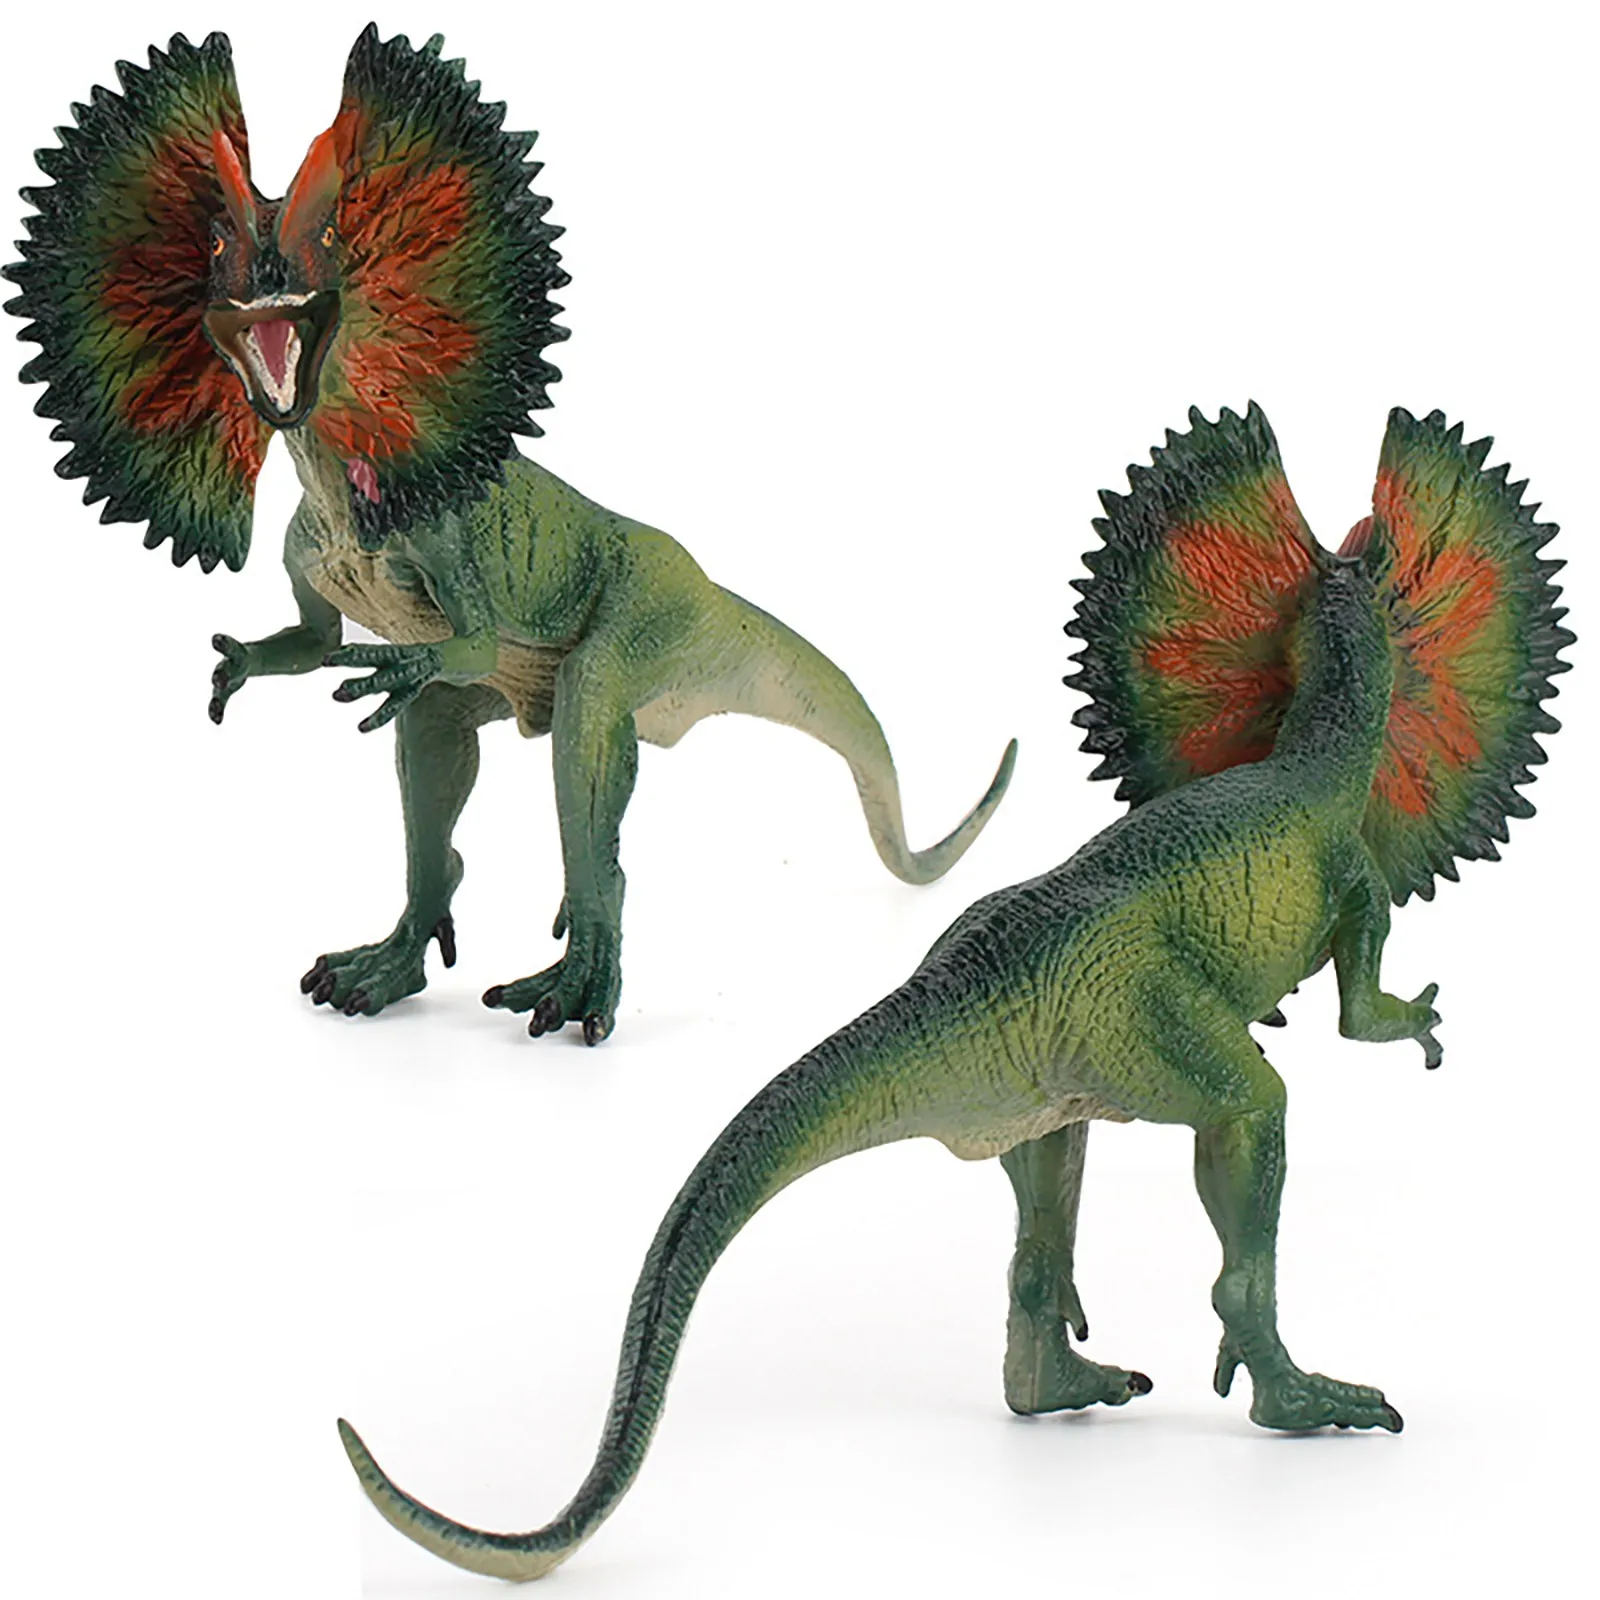 Modelo de dinosaurio realista, Dilophosaurus, dinosaurio de simulación,  juguete biológico, juguetes educativos|Biología| - AliExpress